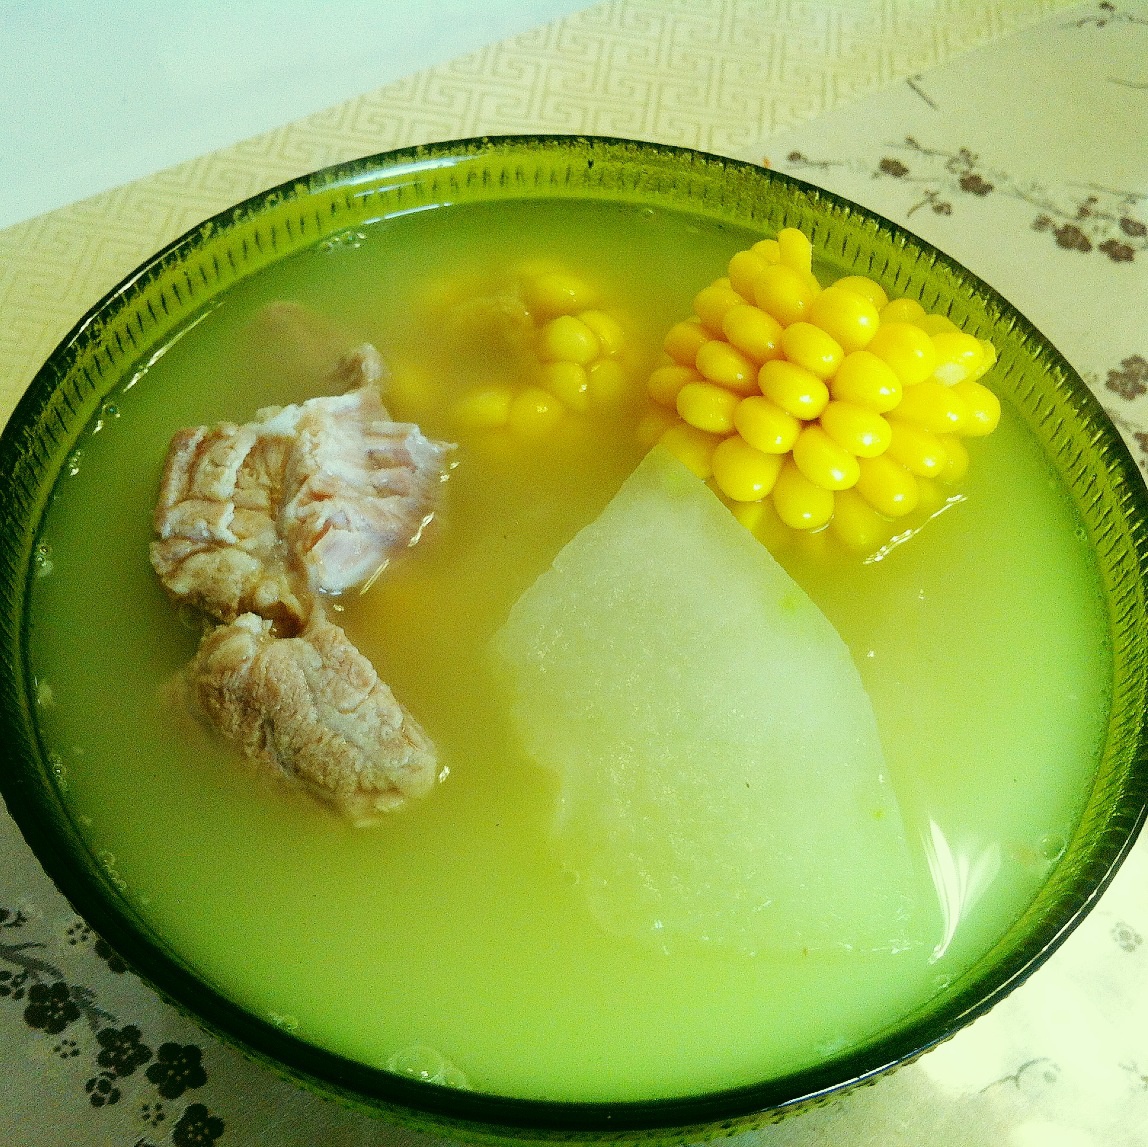 冬瓜玉米排骨汤